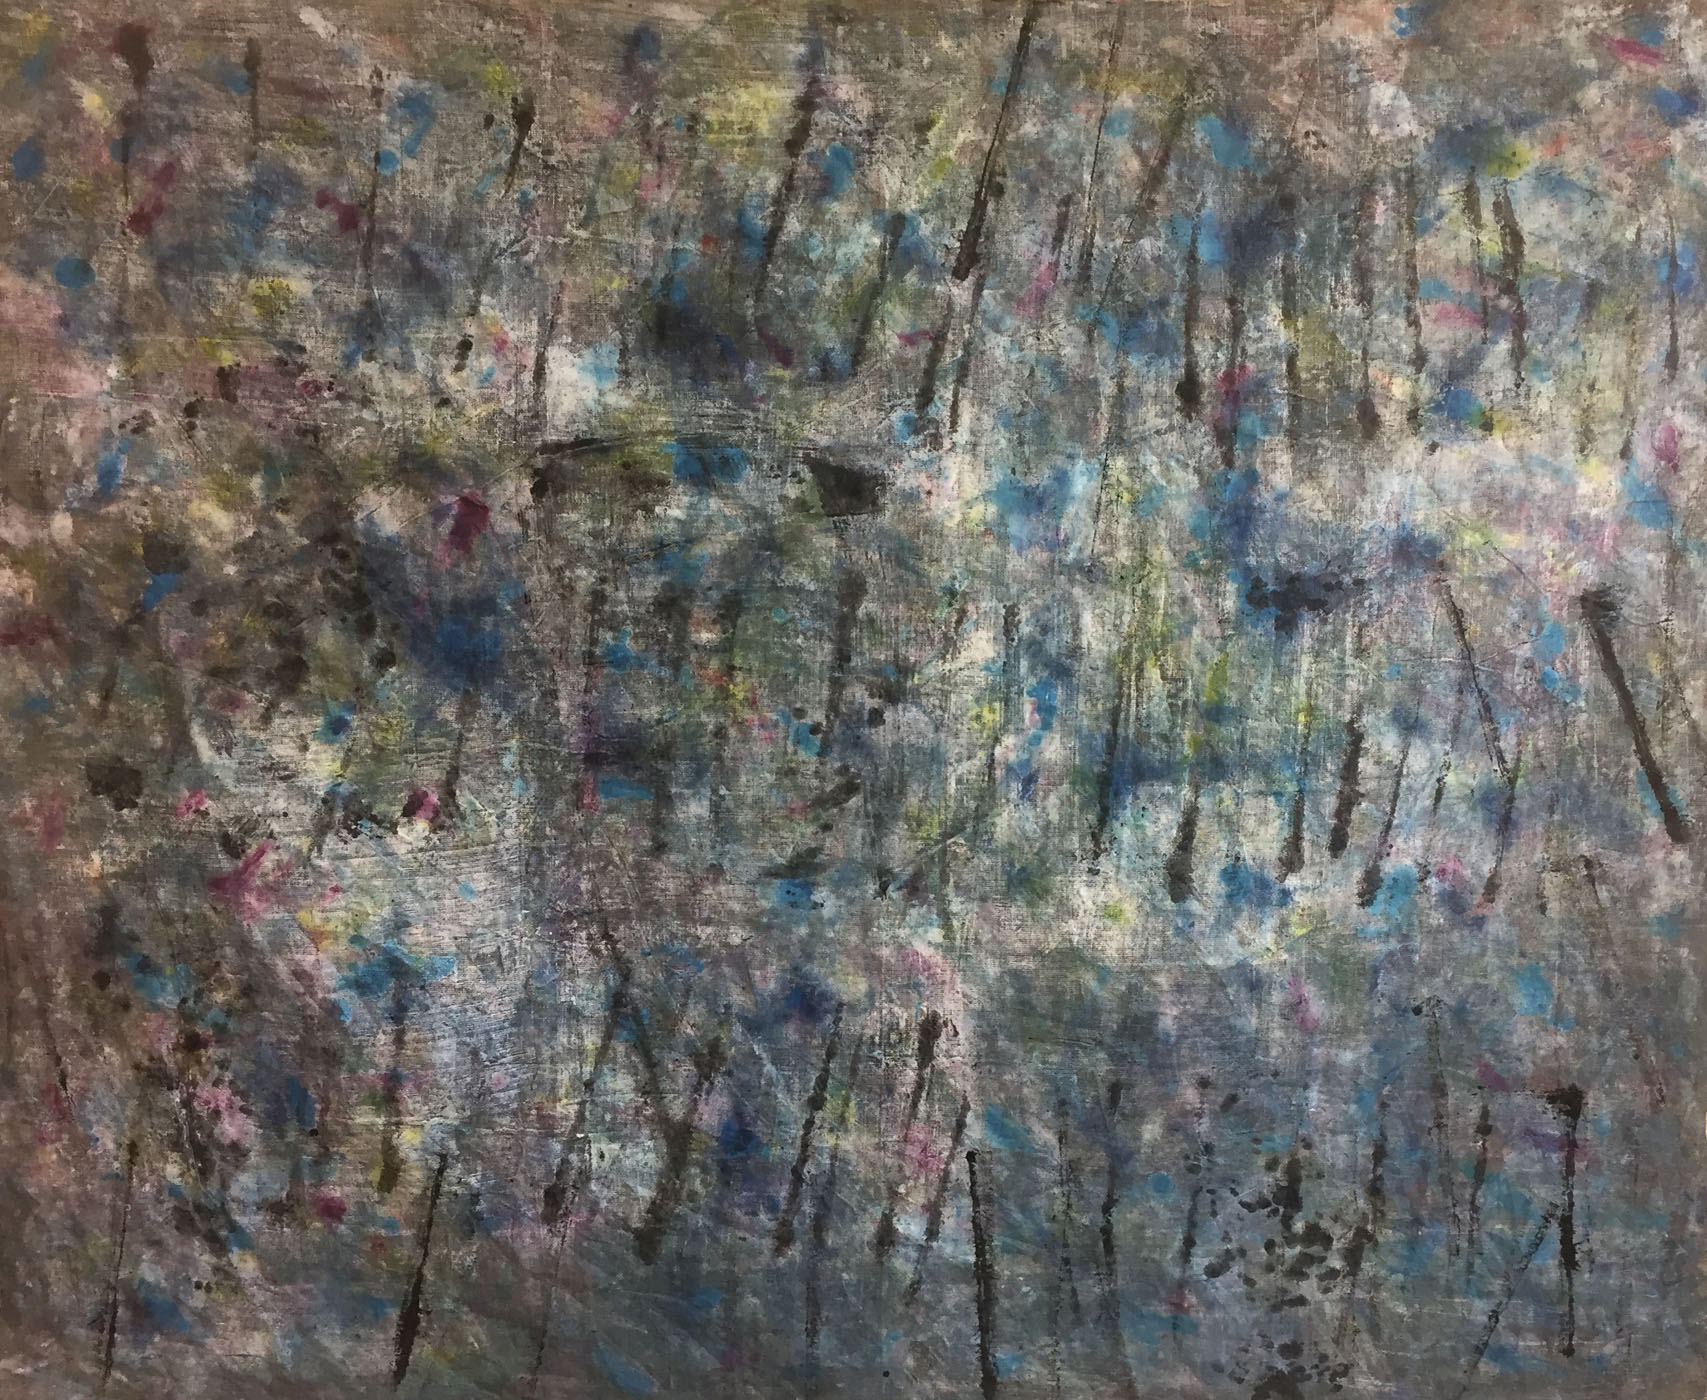 MARC FELD 2019 CADENSE Huile et pigments sur toile 175 x 213 cm